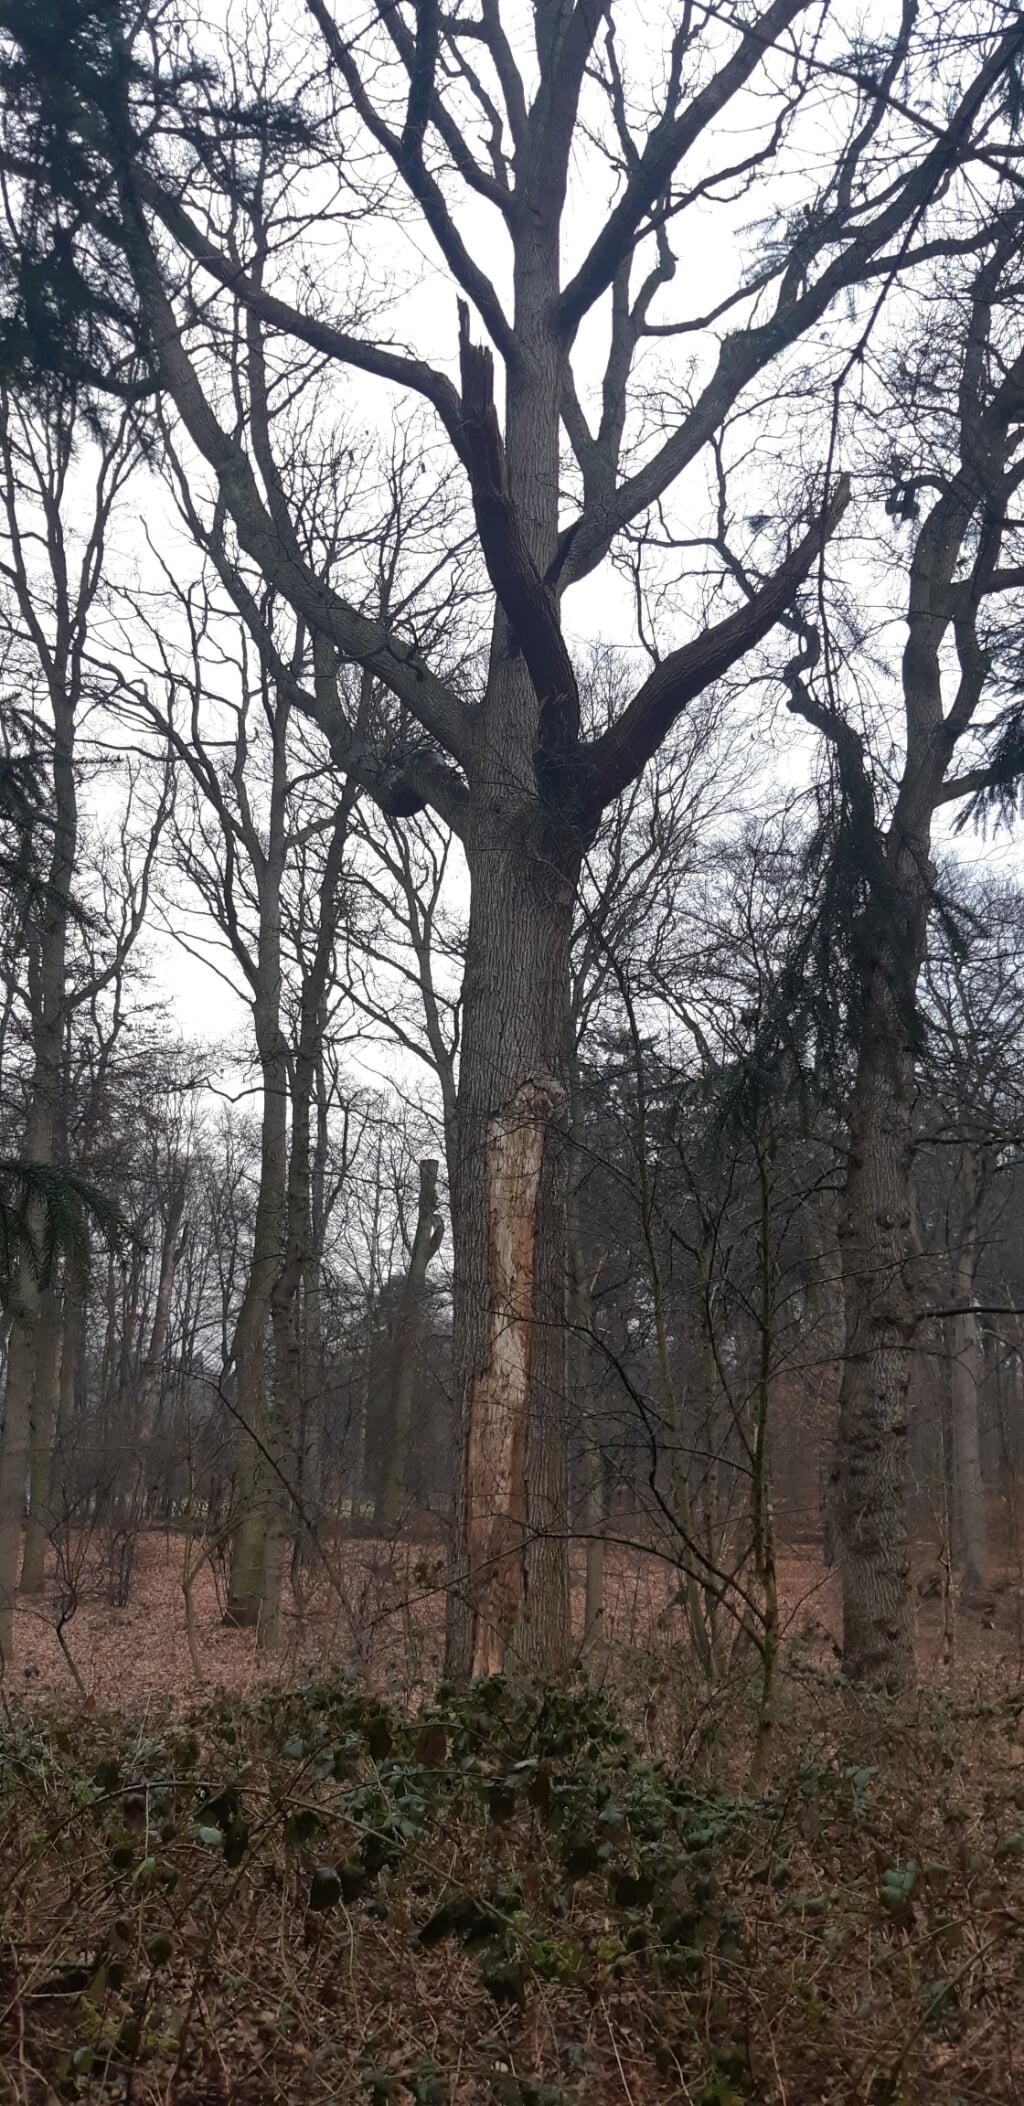 Oude bomen zullen noodgedwongen worden gekapt om gevaarlijke situaties te voorkomen.